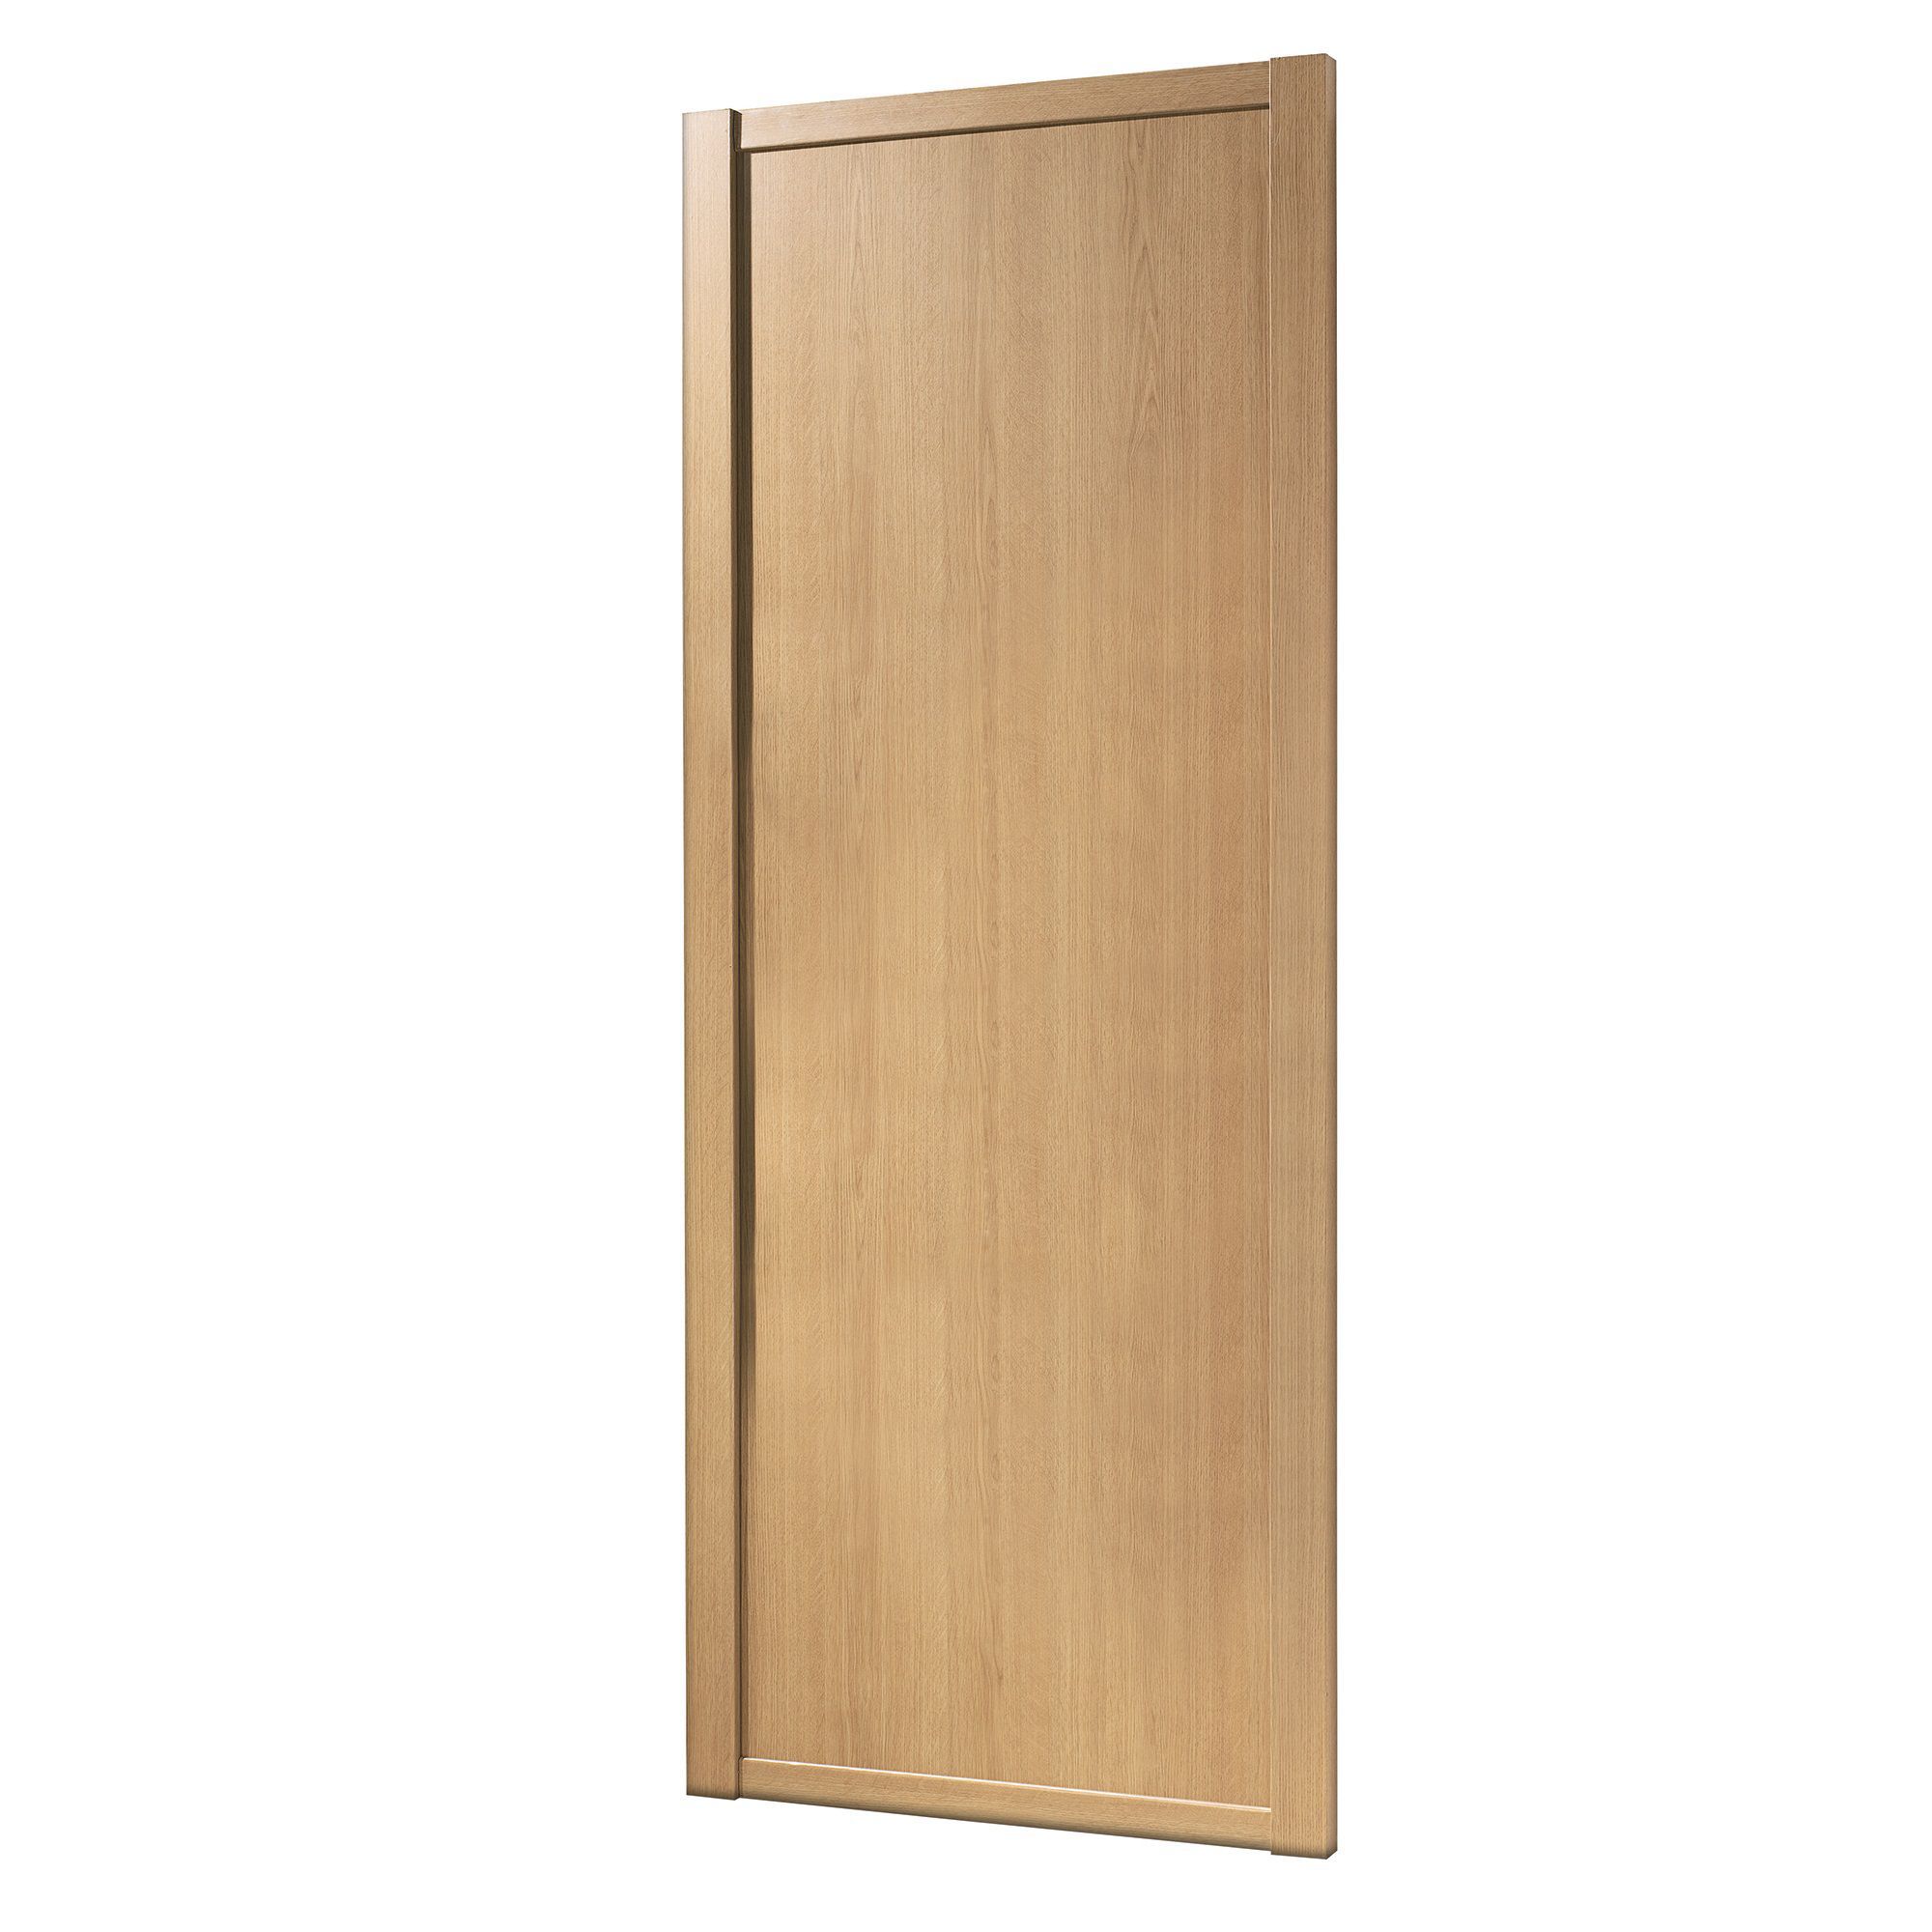 Spacepro Classic Shaker Oak effect Sliding wardrobe door (H) 2260mm x (W) 914mm